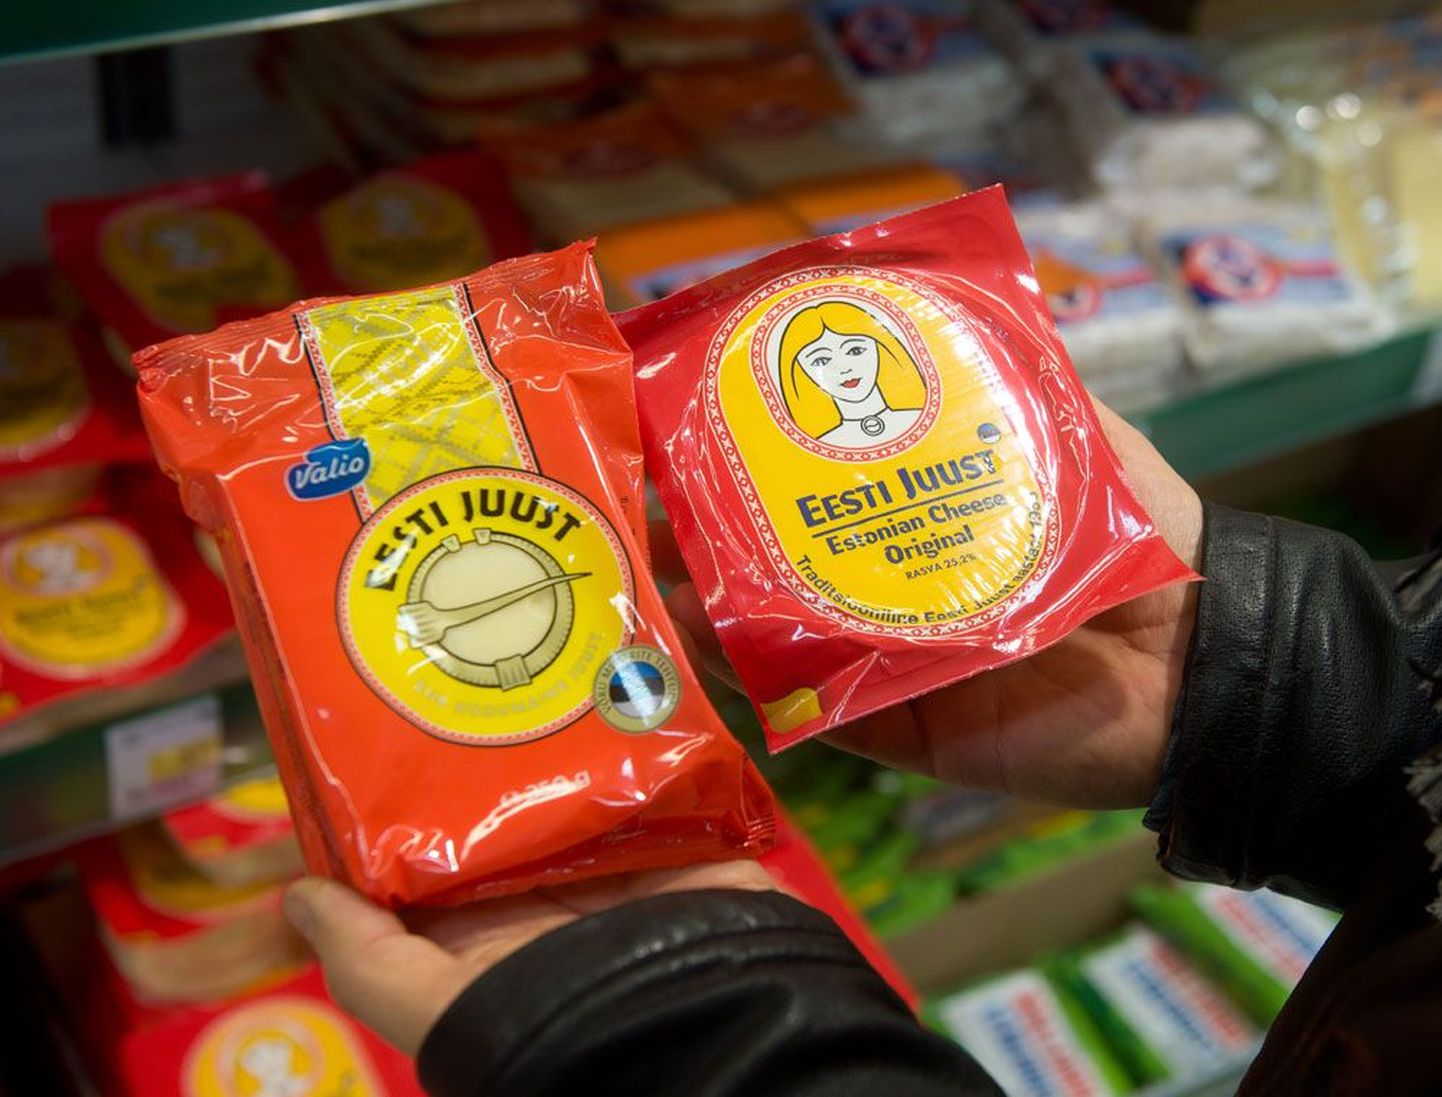 Valio Eesti juustu pakendil on sama värvikombinatsioon – punane ja kollane –, nagu Estoveri Eesti juustu pakendil.